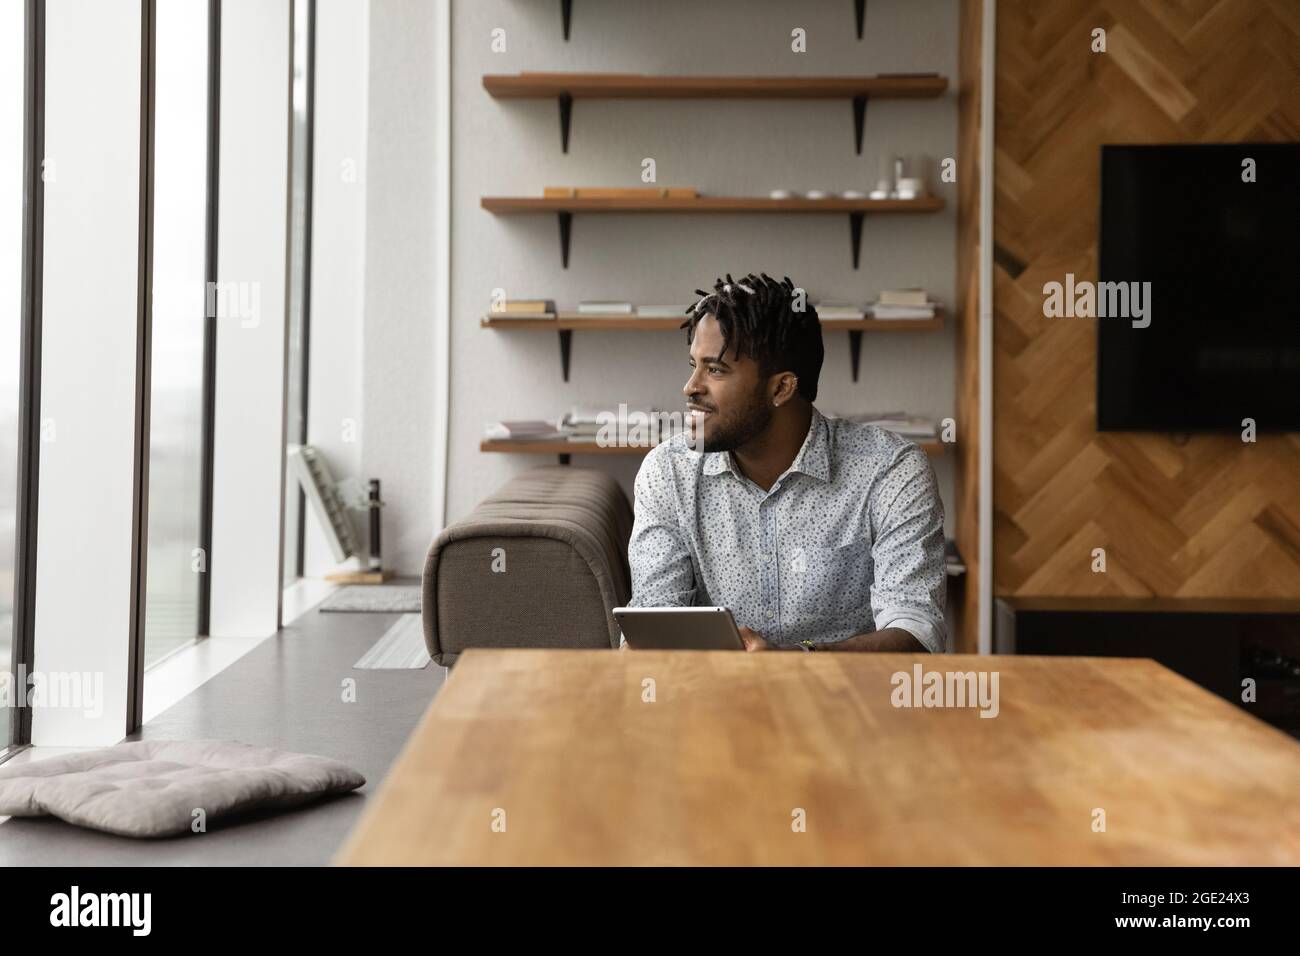 Afrikanischer Kerl halten Tablette beiseite schauen, Tagträume über Karrierewachstum Stockfoto